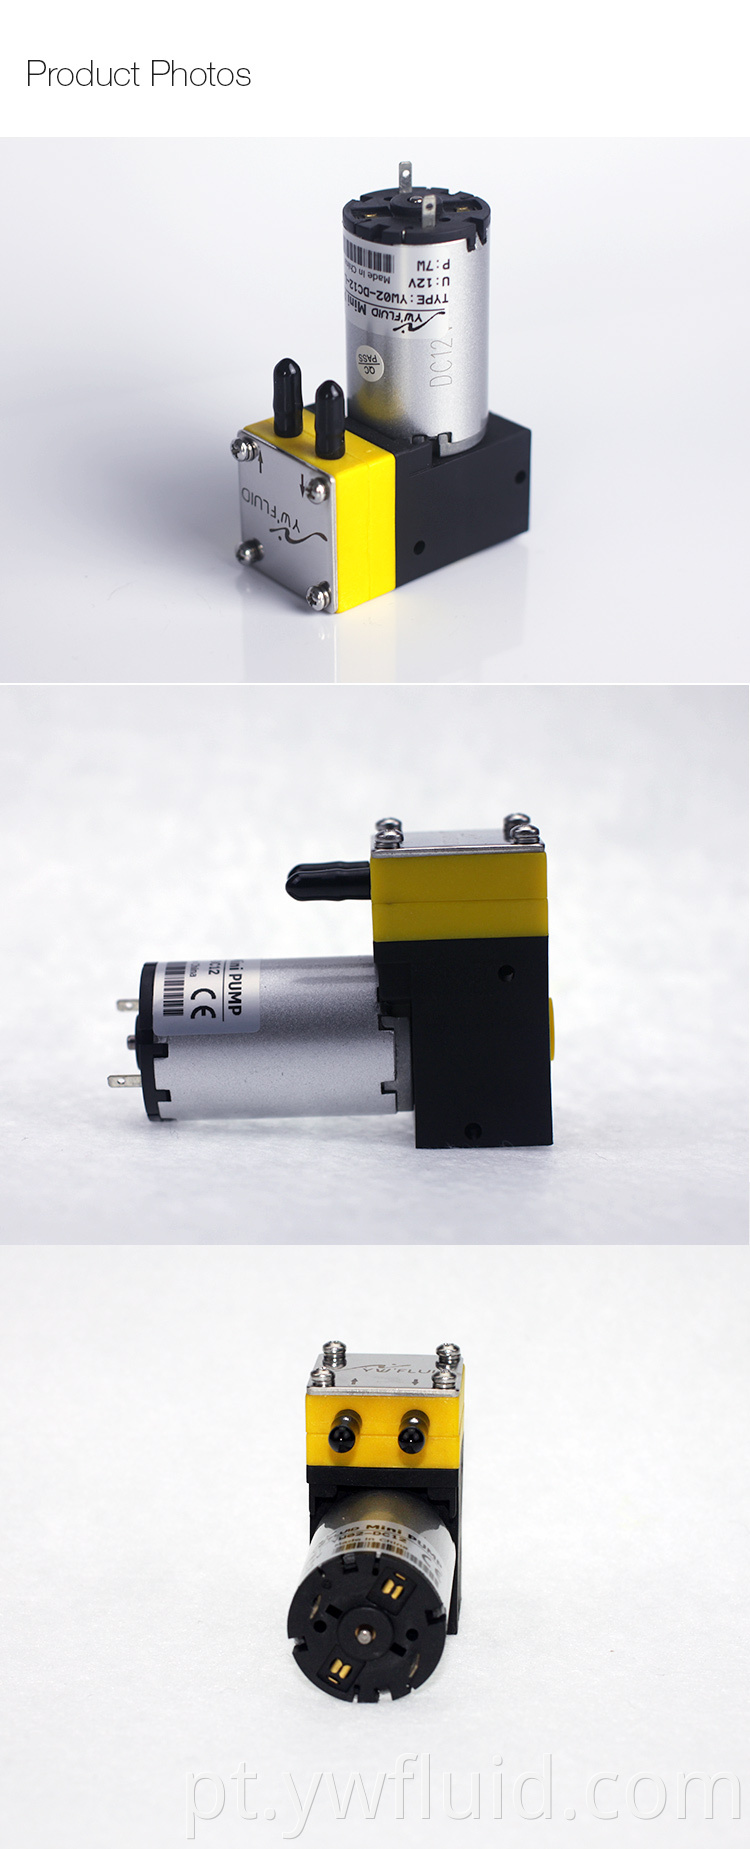 Bomba de jato de tinta química de resistência Ywfluid 12V 24V com motor CC usado para indústria têxtil